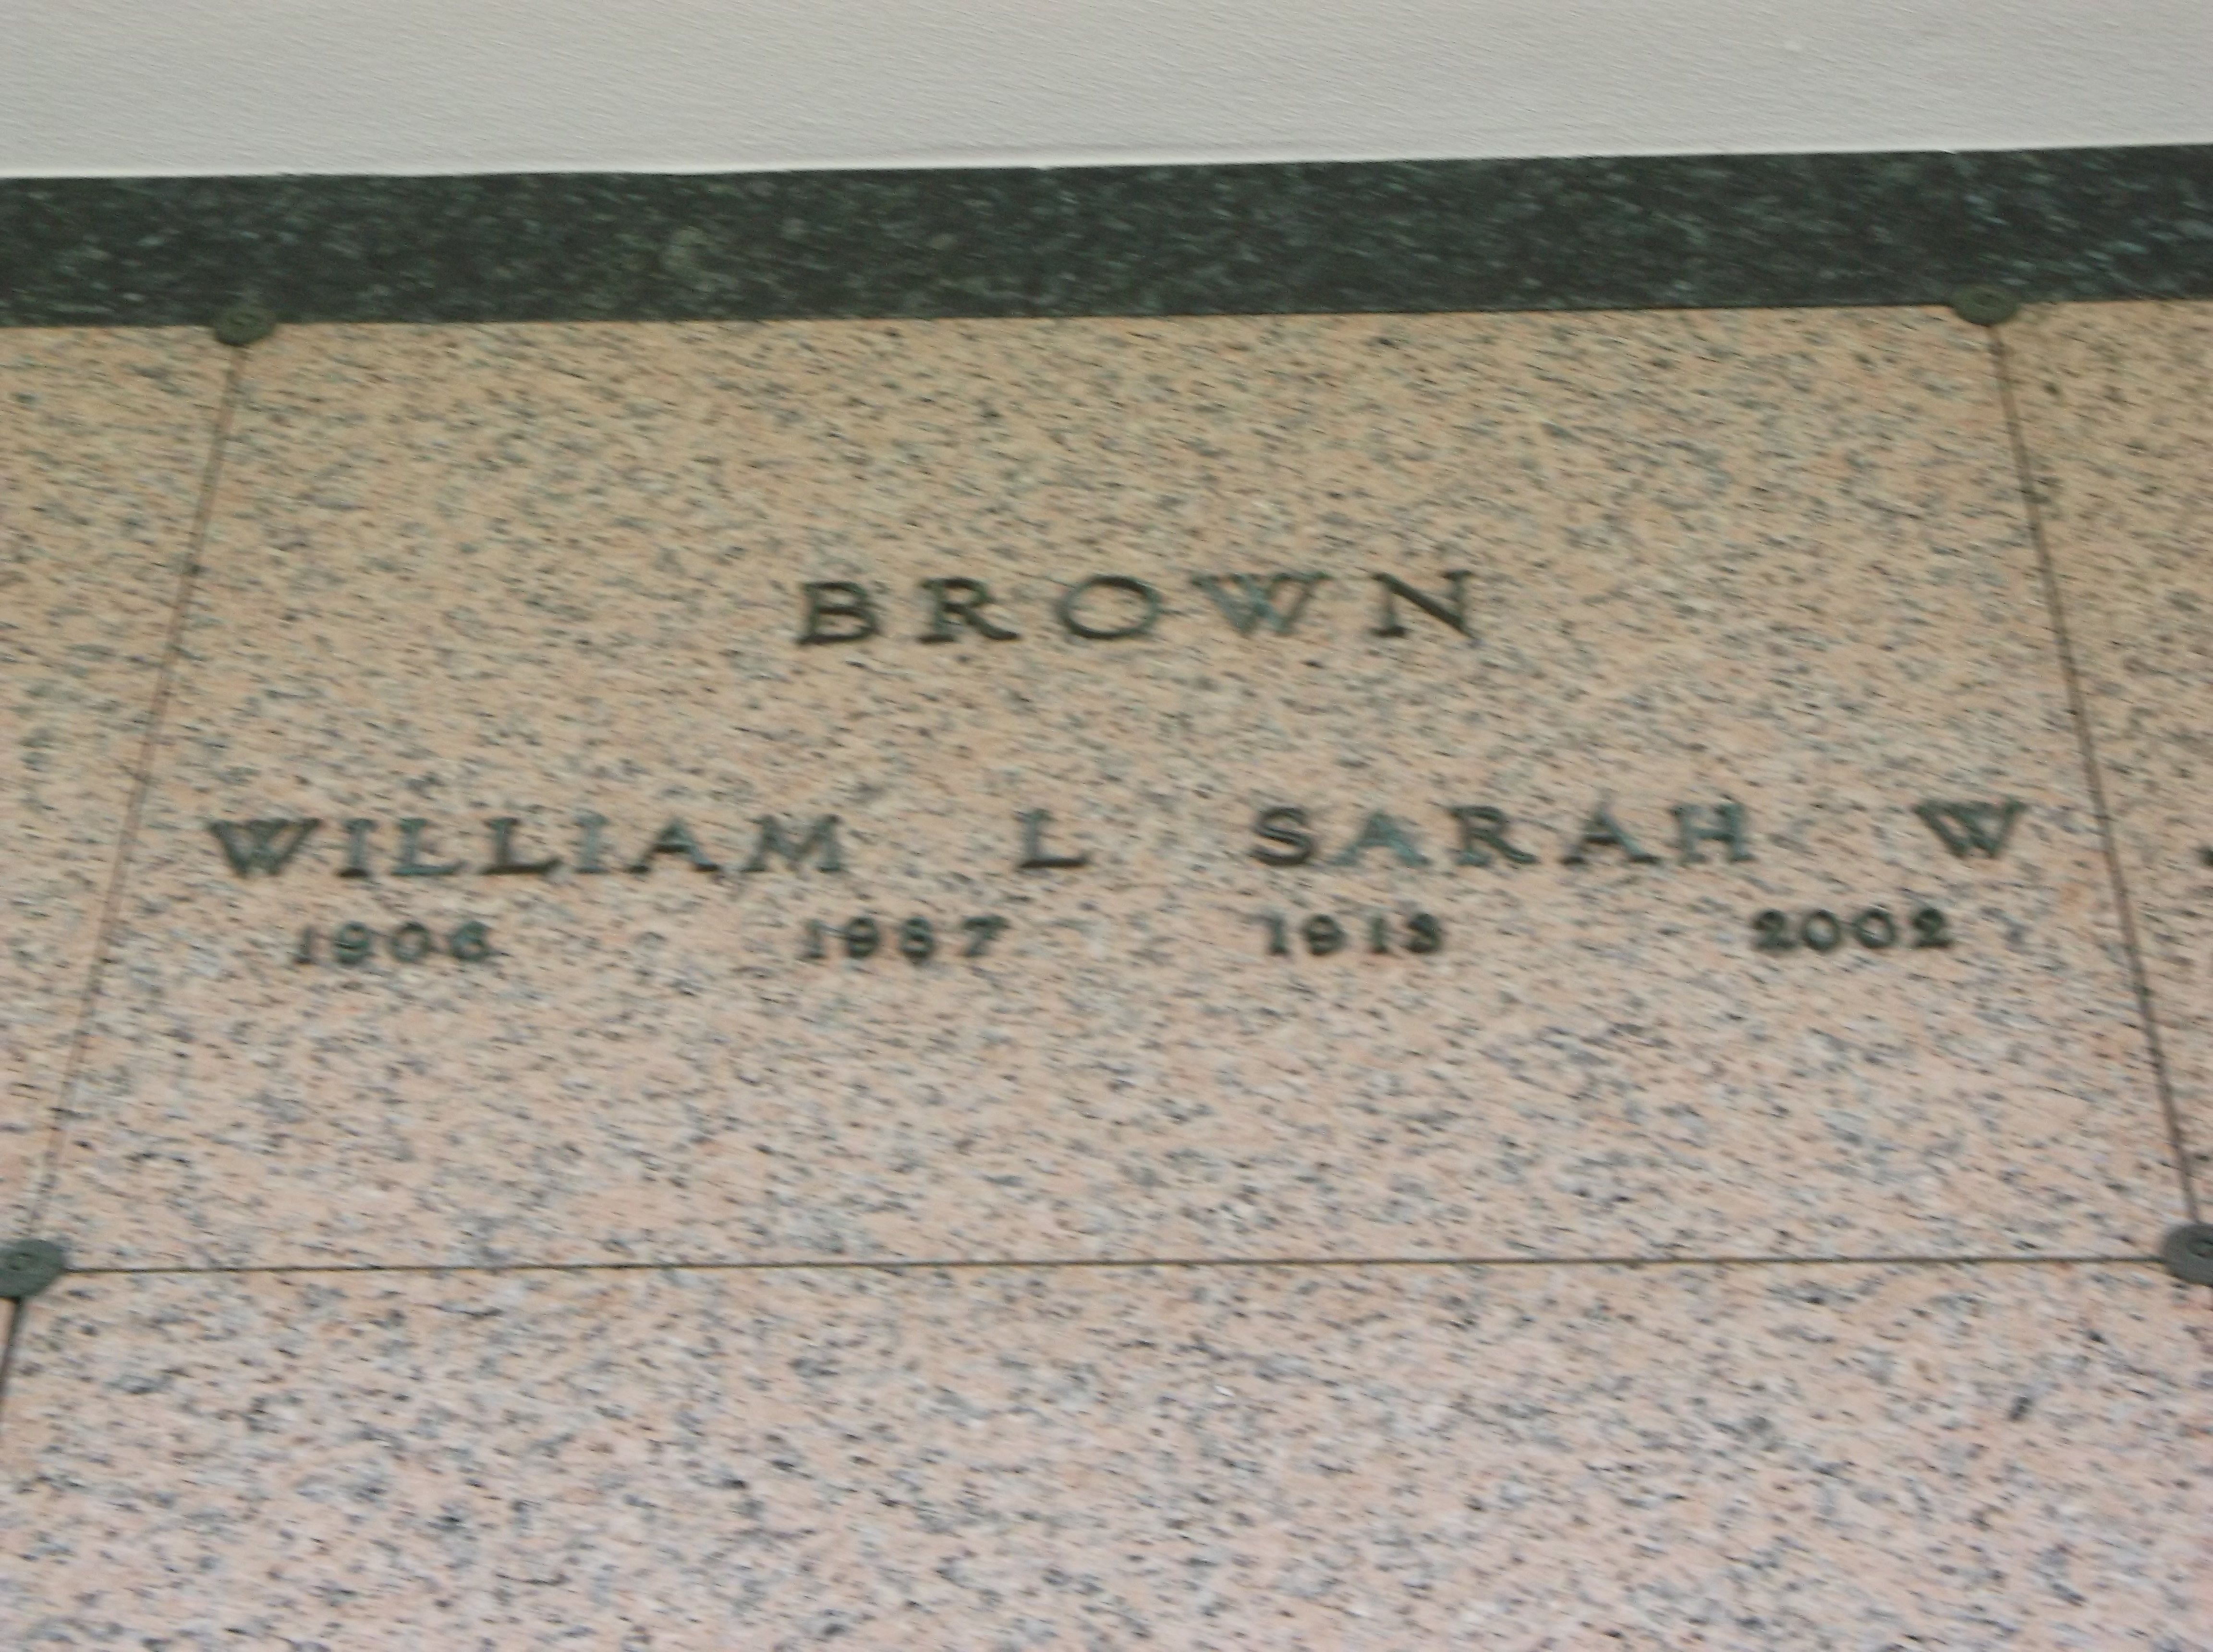 William L Brown